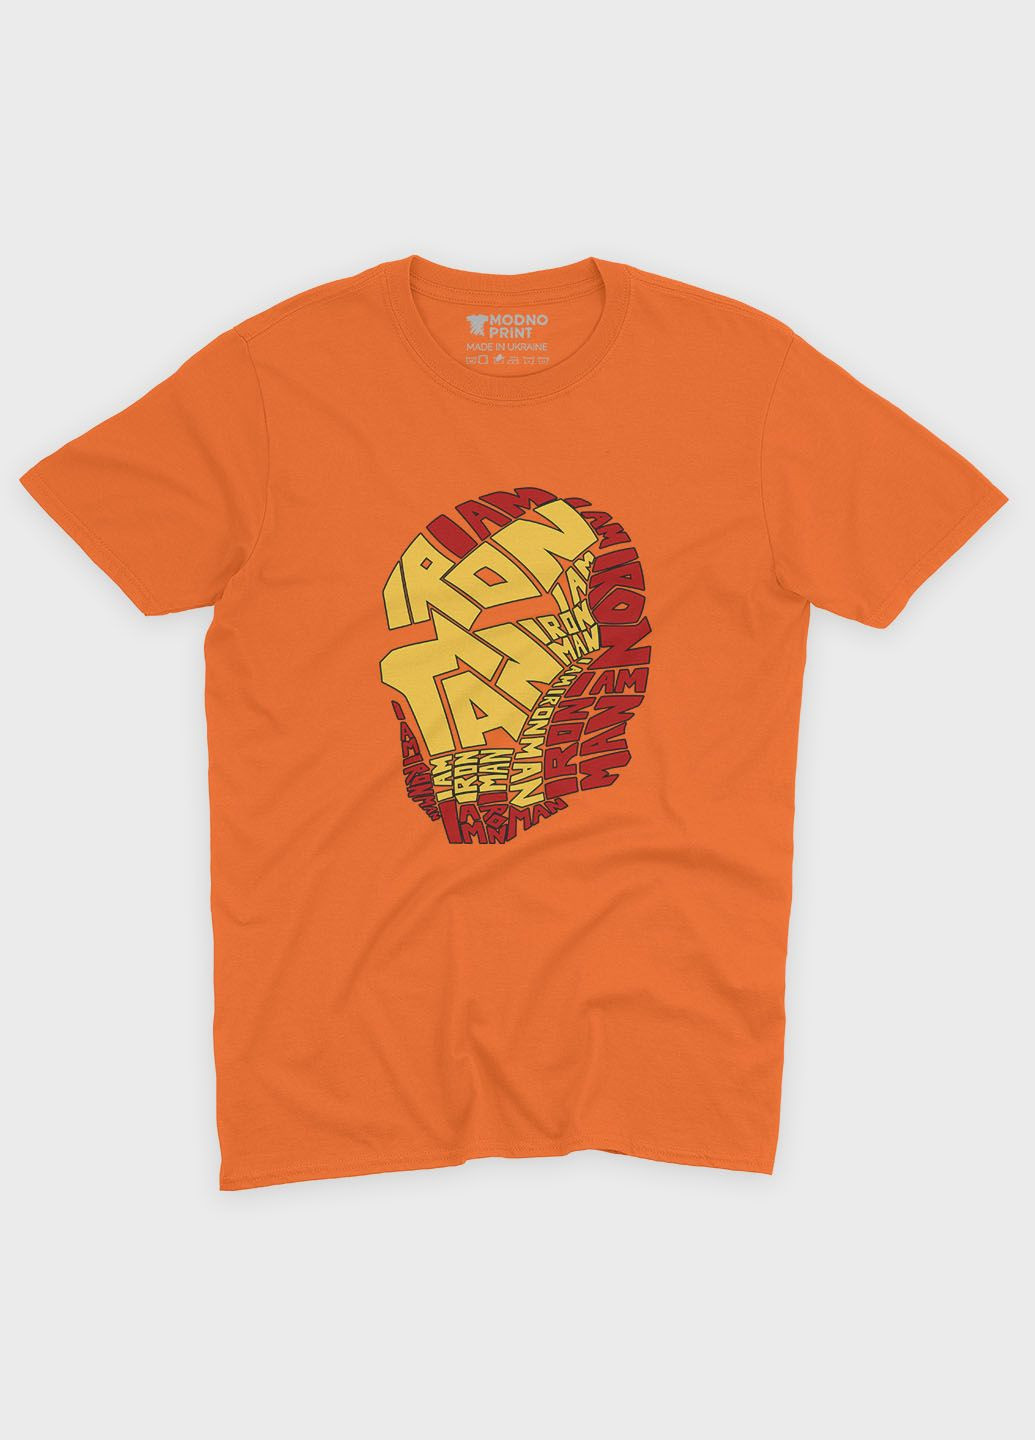 Помаранчева демісезонна футболка для хлопчика з принтом супергероя - залізна людина (ts001-1-ora-006-016-001-b) Modno